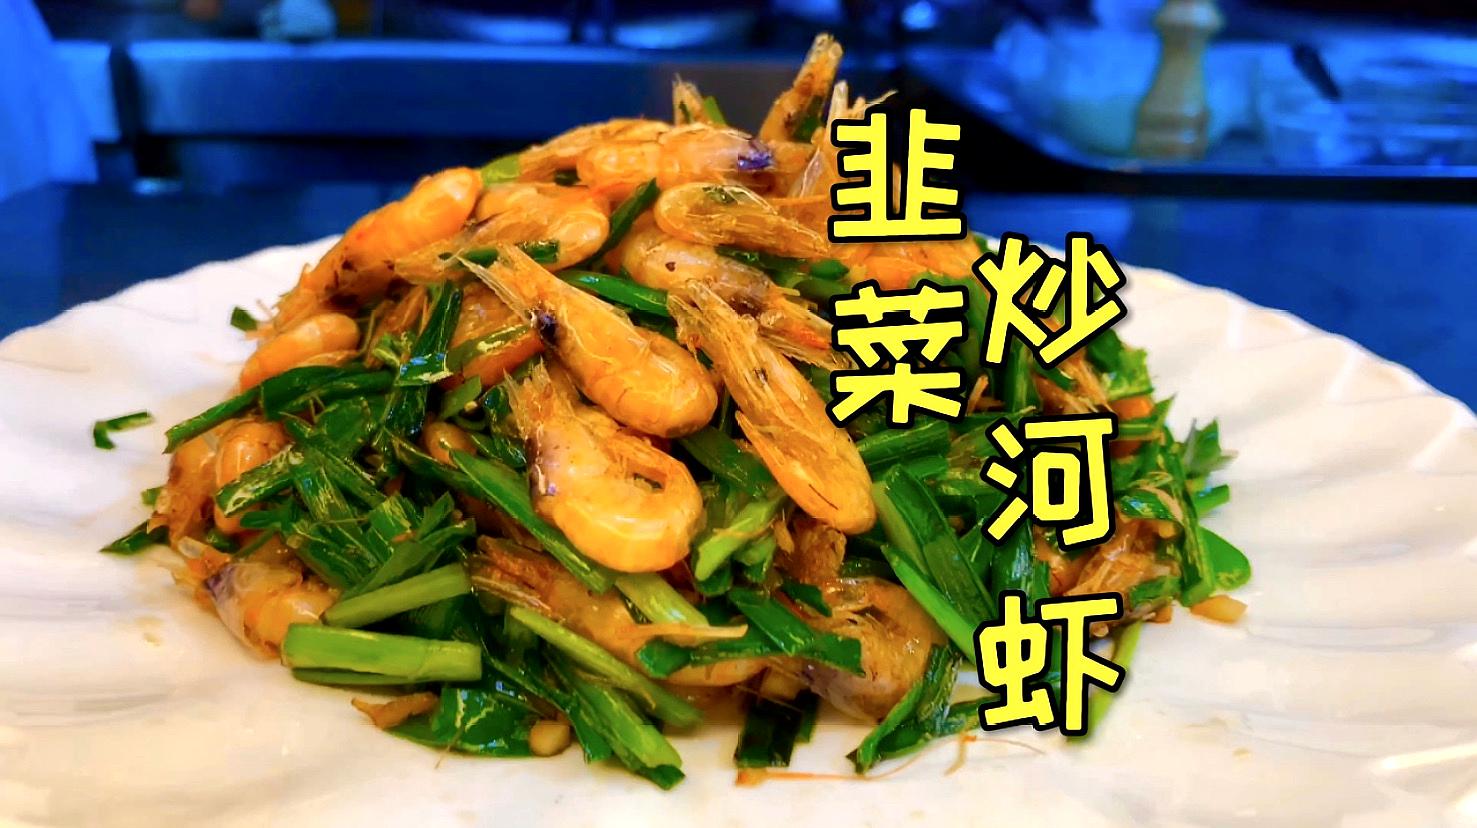 分享一道韭菜炒河虾鲜酥松脆,下酒必备,制作非常简单